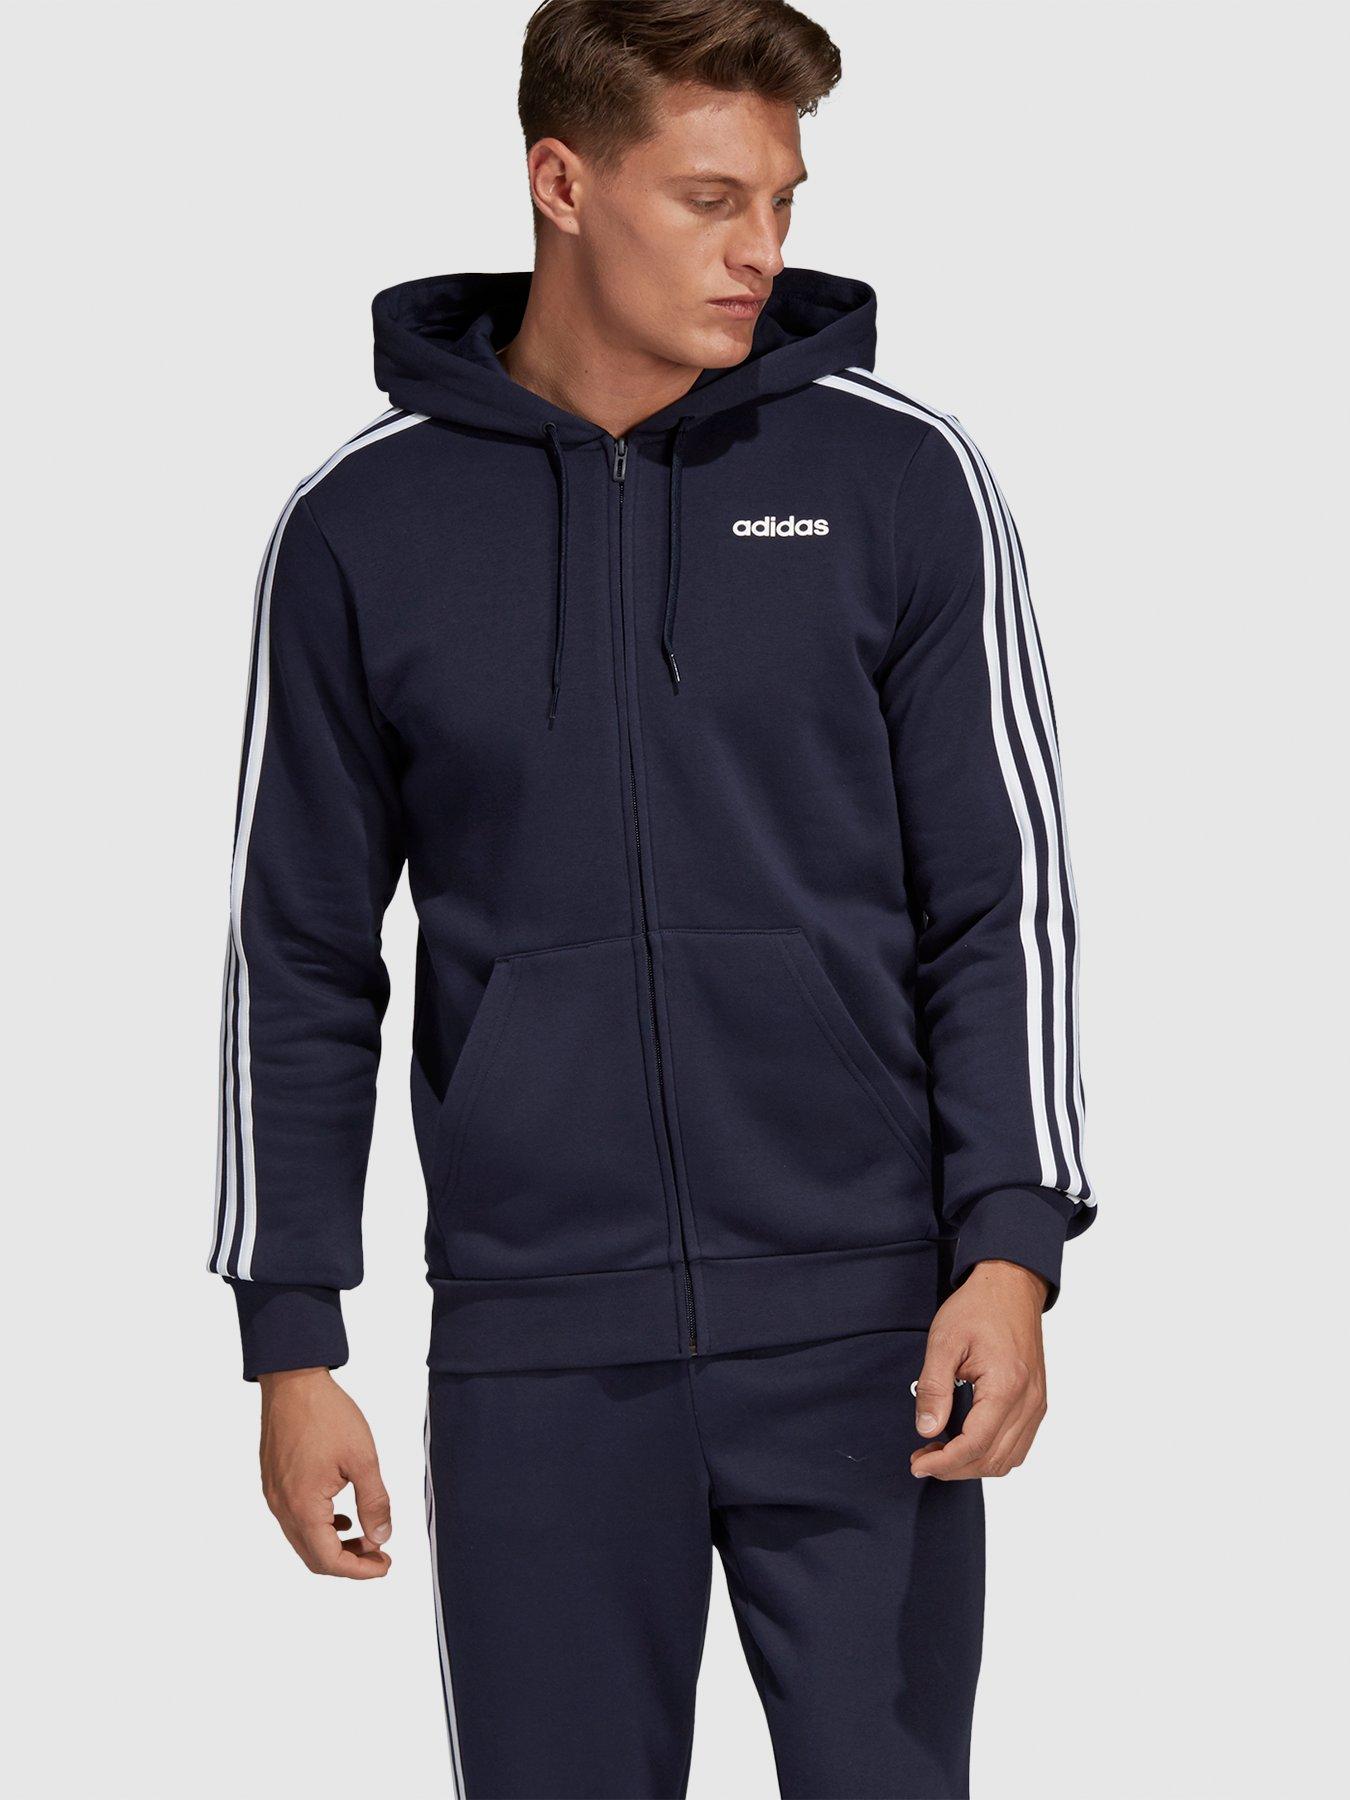 adidas men's essential fleece zip hoodie